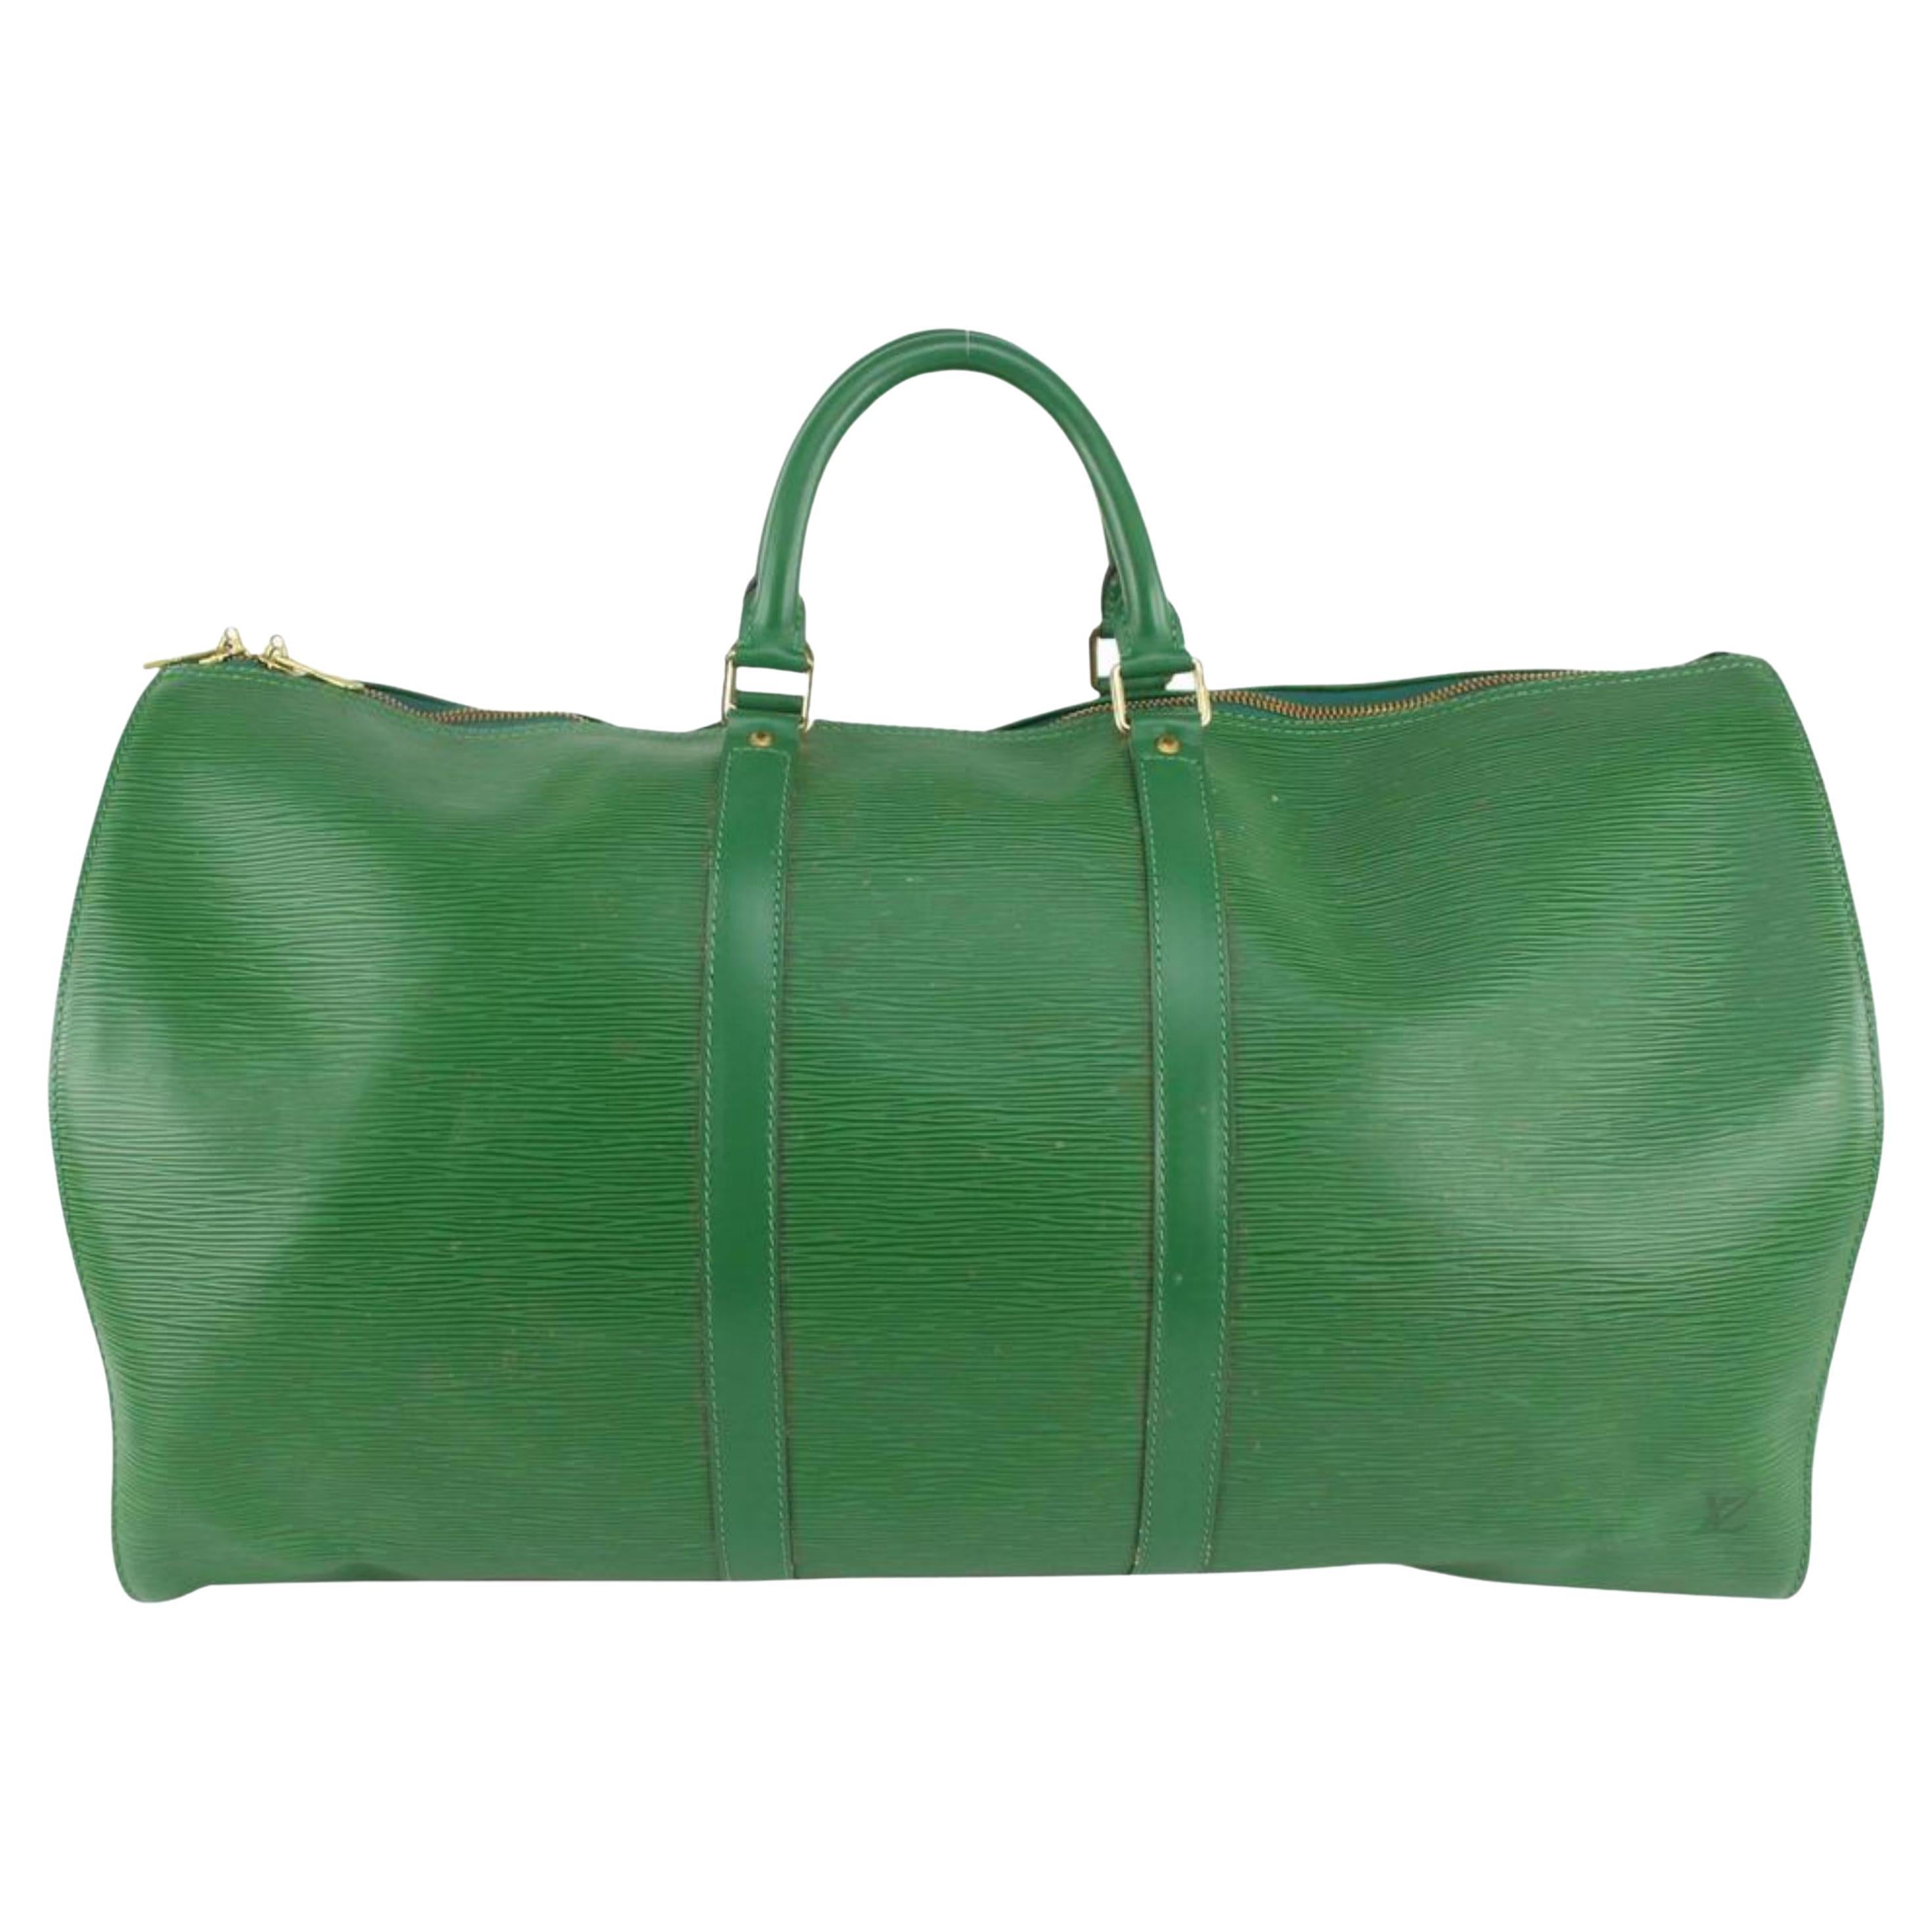 Louis Vuitton Green Epi Leather Keepall 55 Boston Bag 123lv27